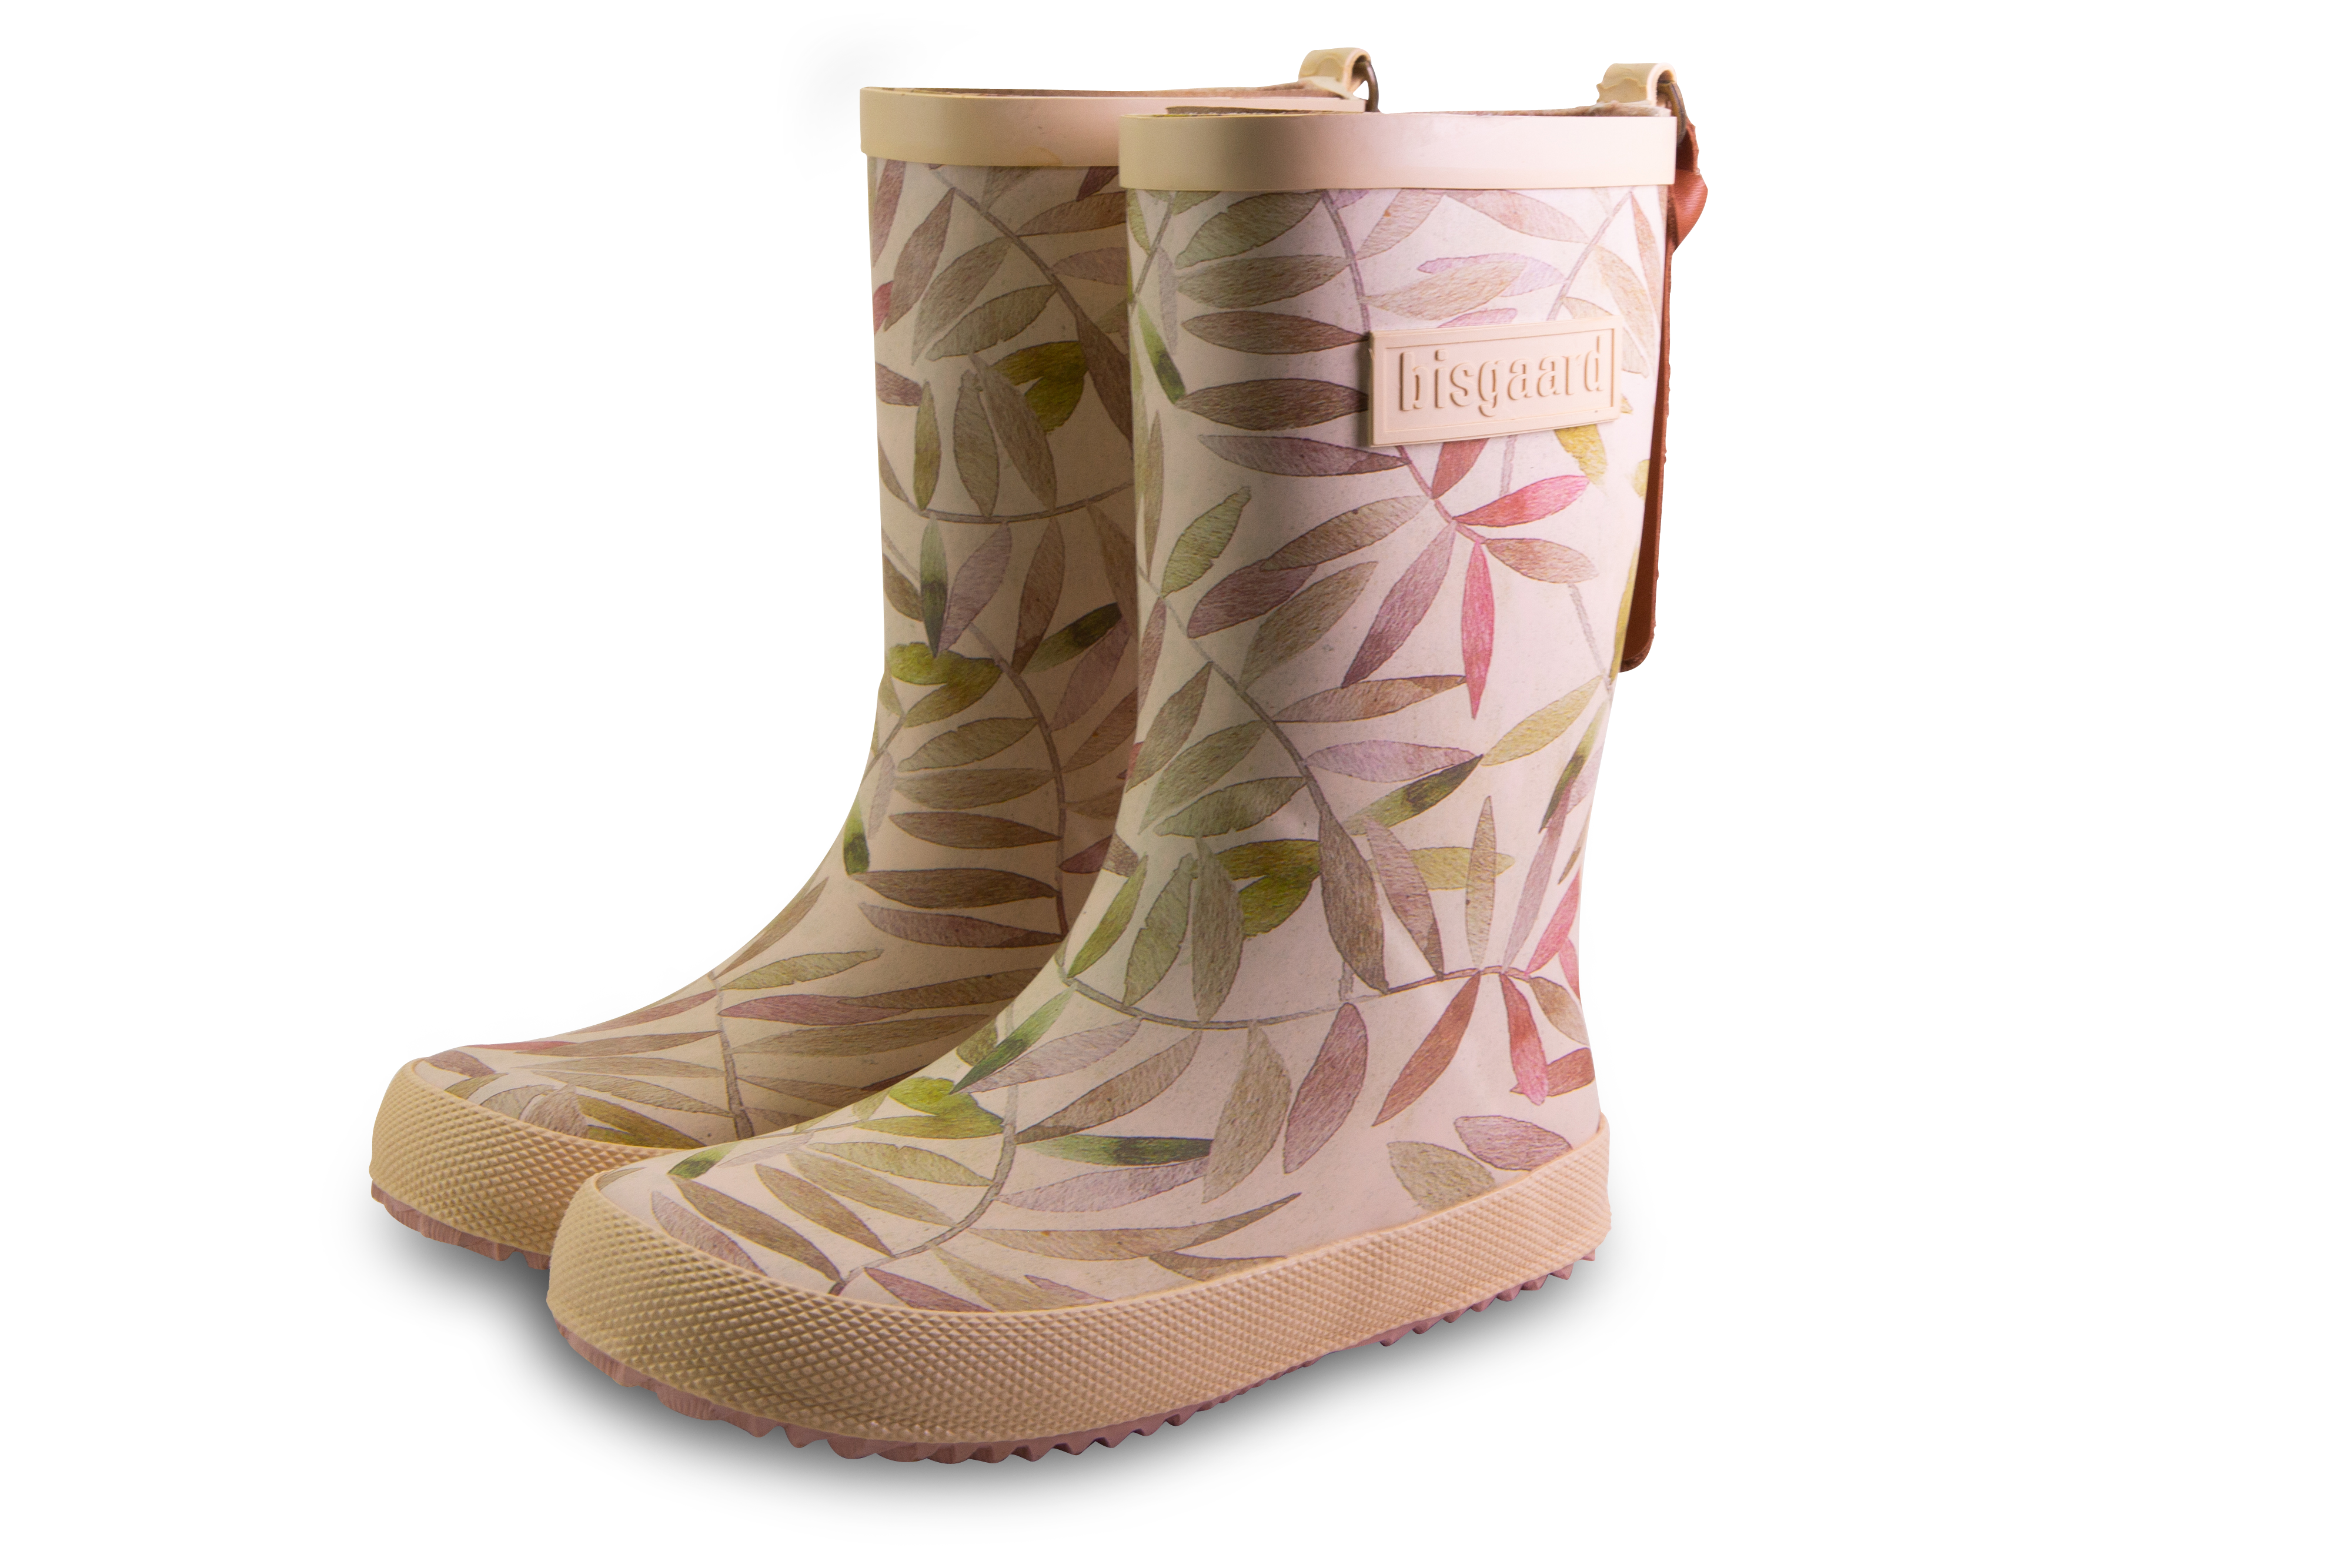 Regenstiefel Fashion Boot, beige leaves